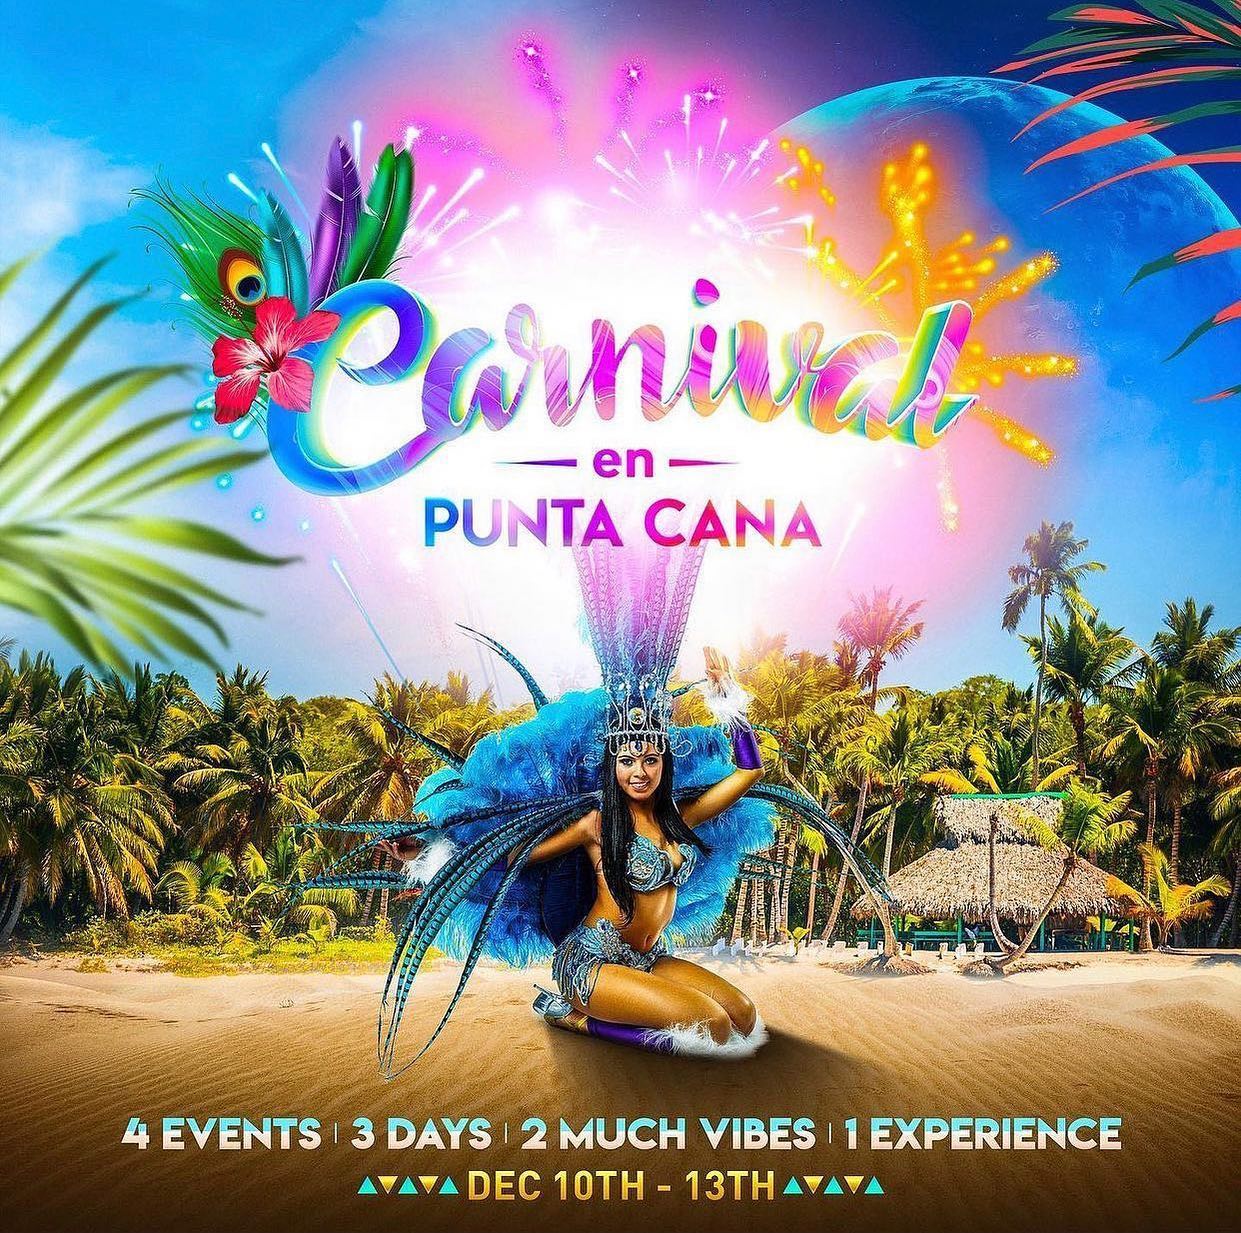 Carnival elements will combine for an ‘Carnival En Punta